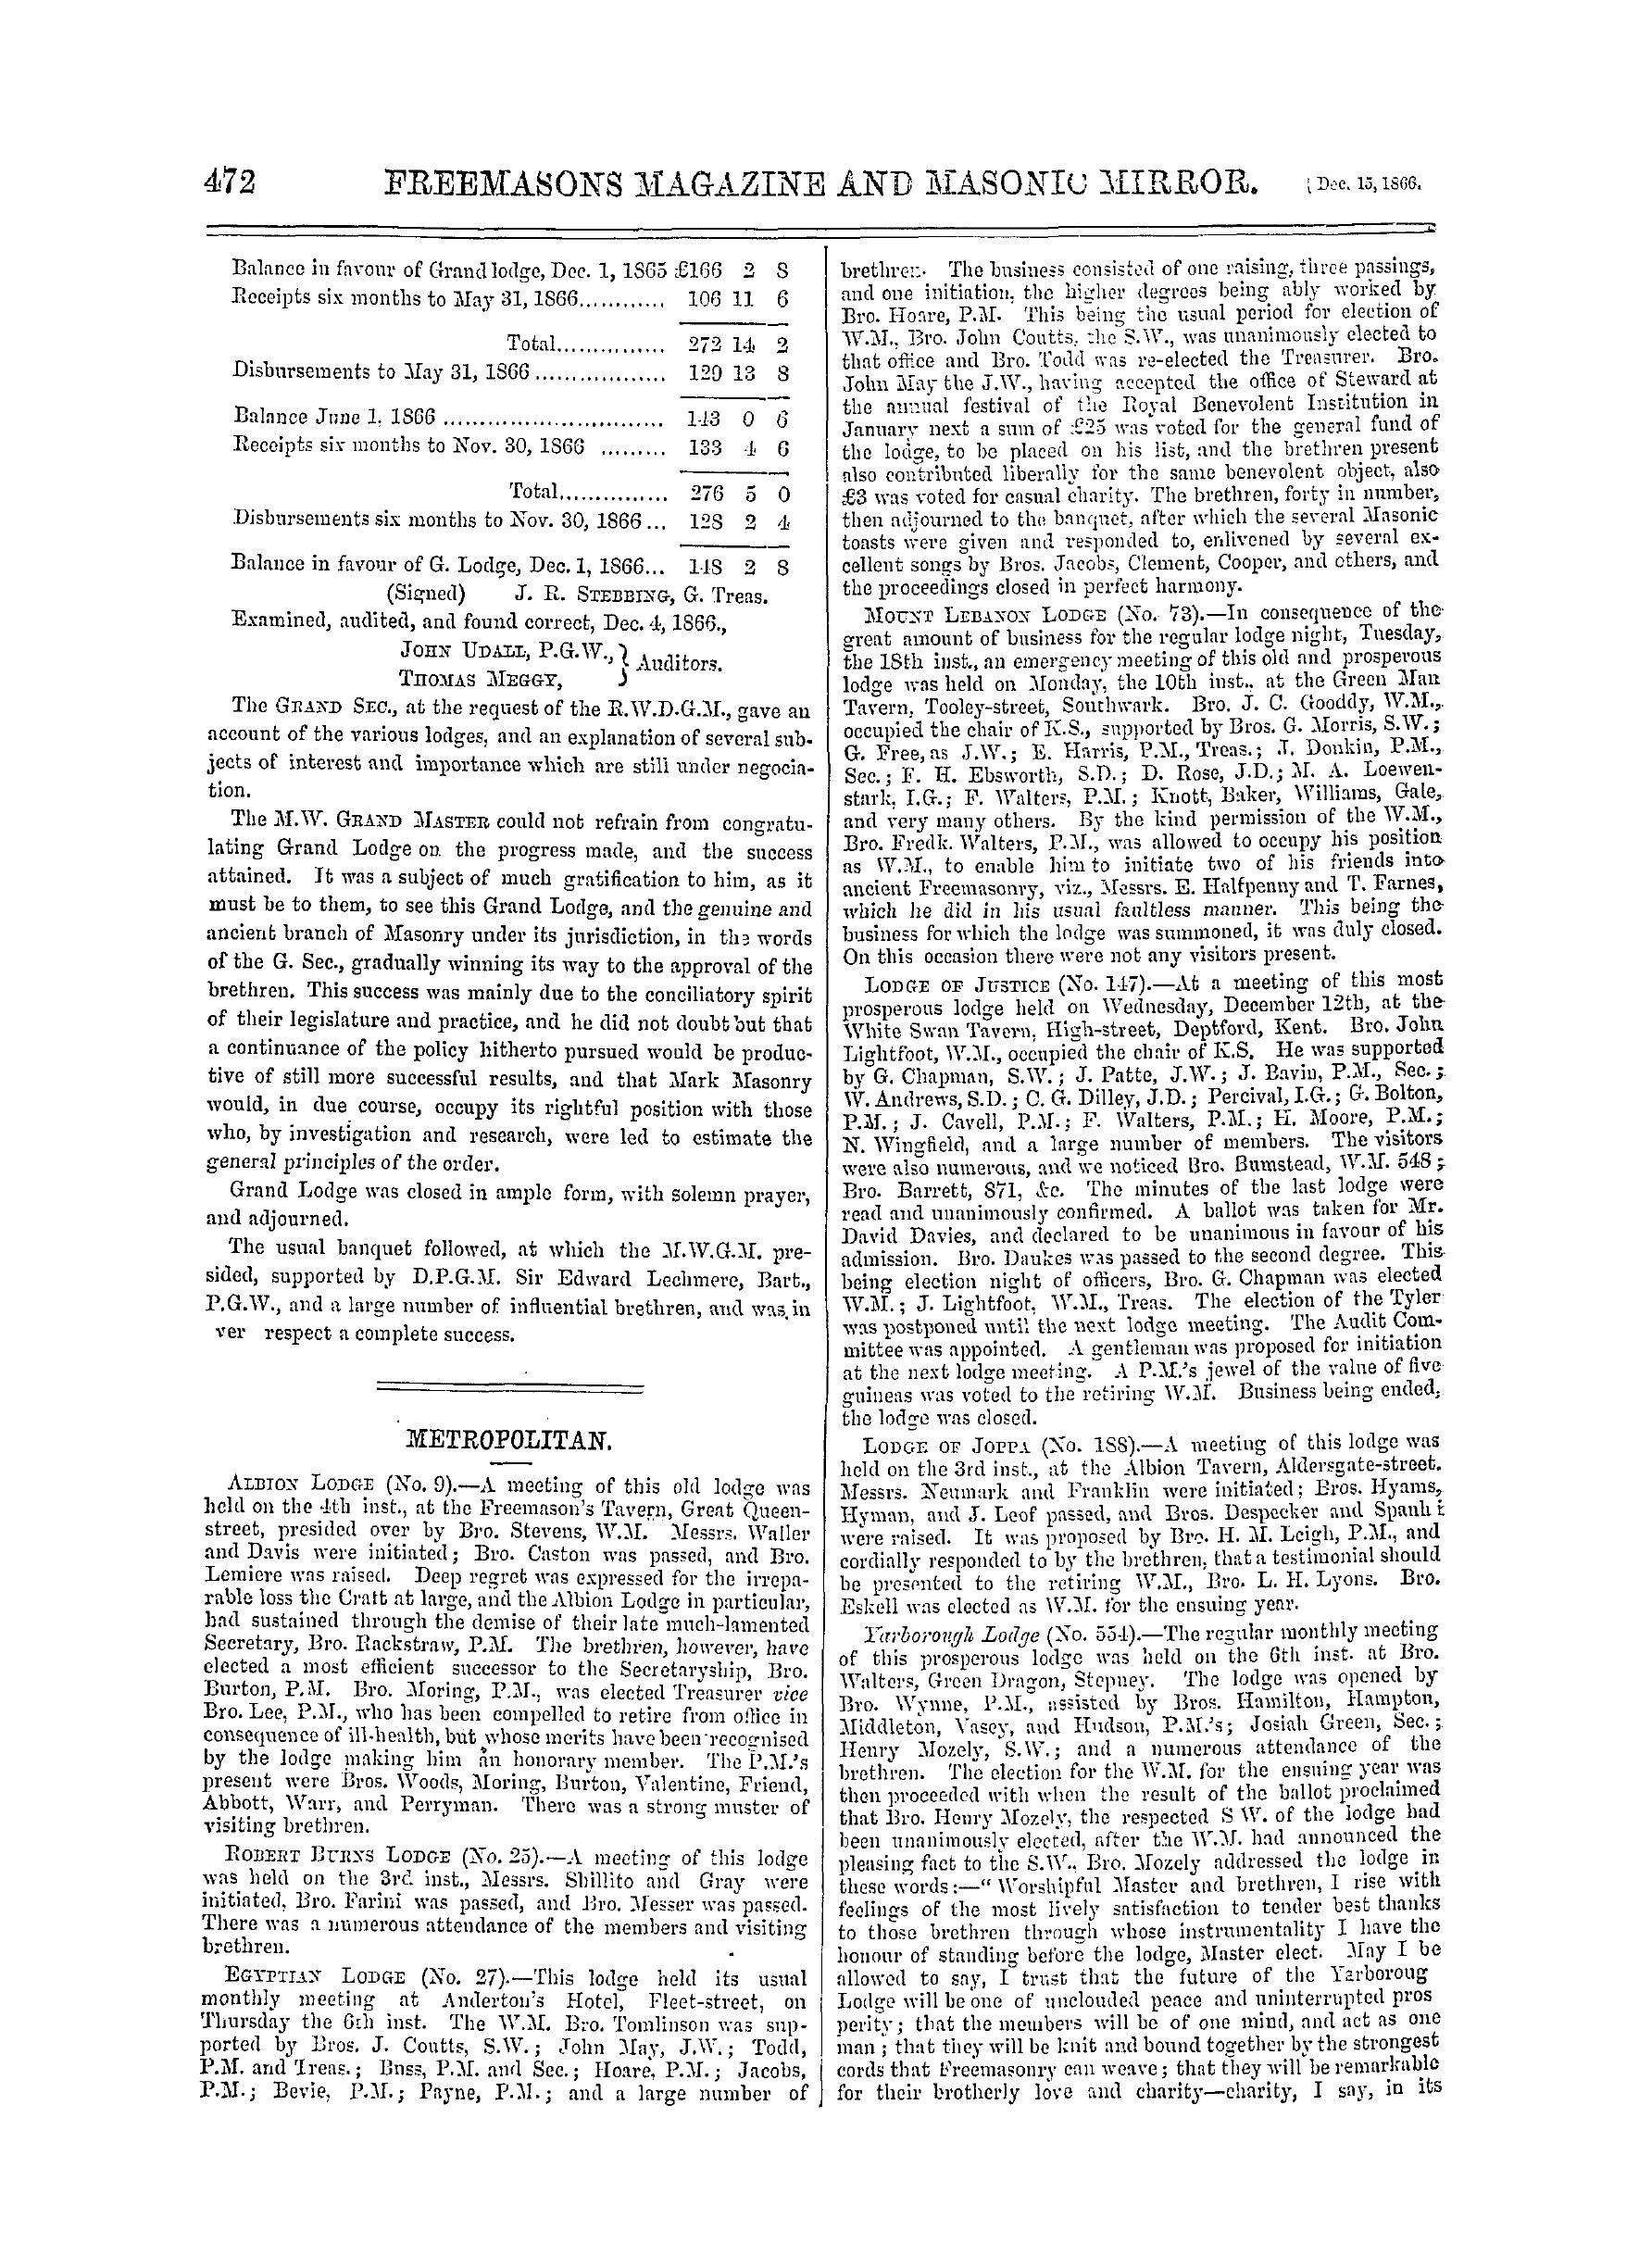 The Freemasons' Monthly Magazine: 1866-12-15: 12